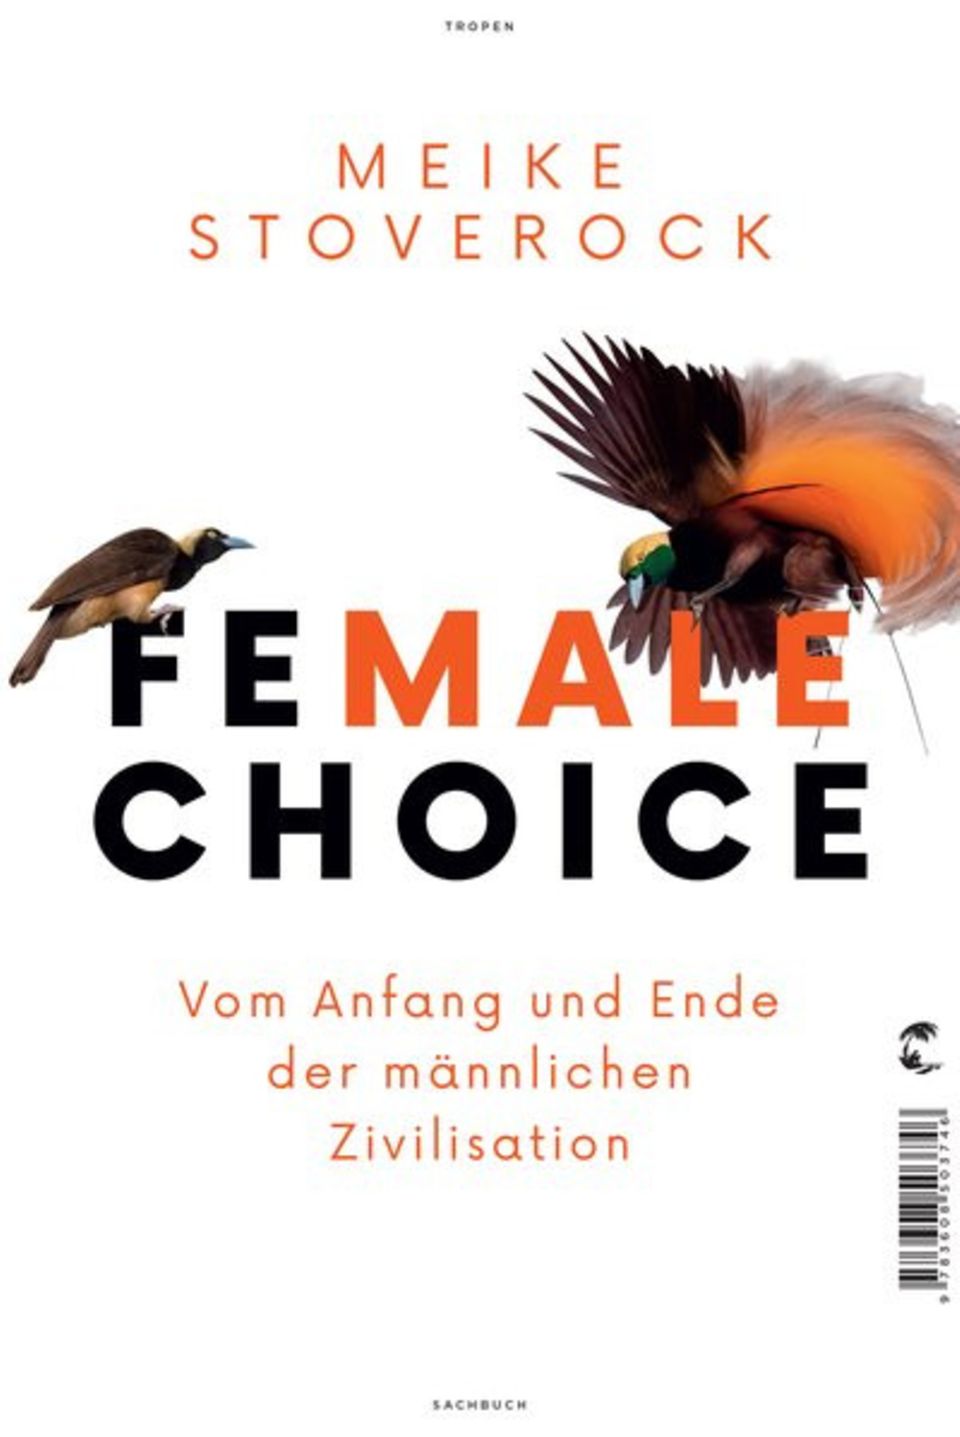 Bücher, die wir uns zu Weihnachten wünschen: Female Choice